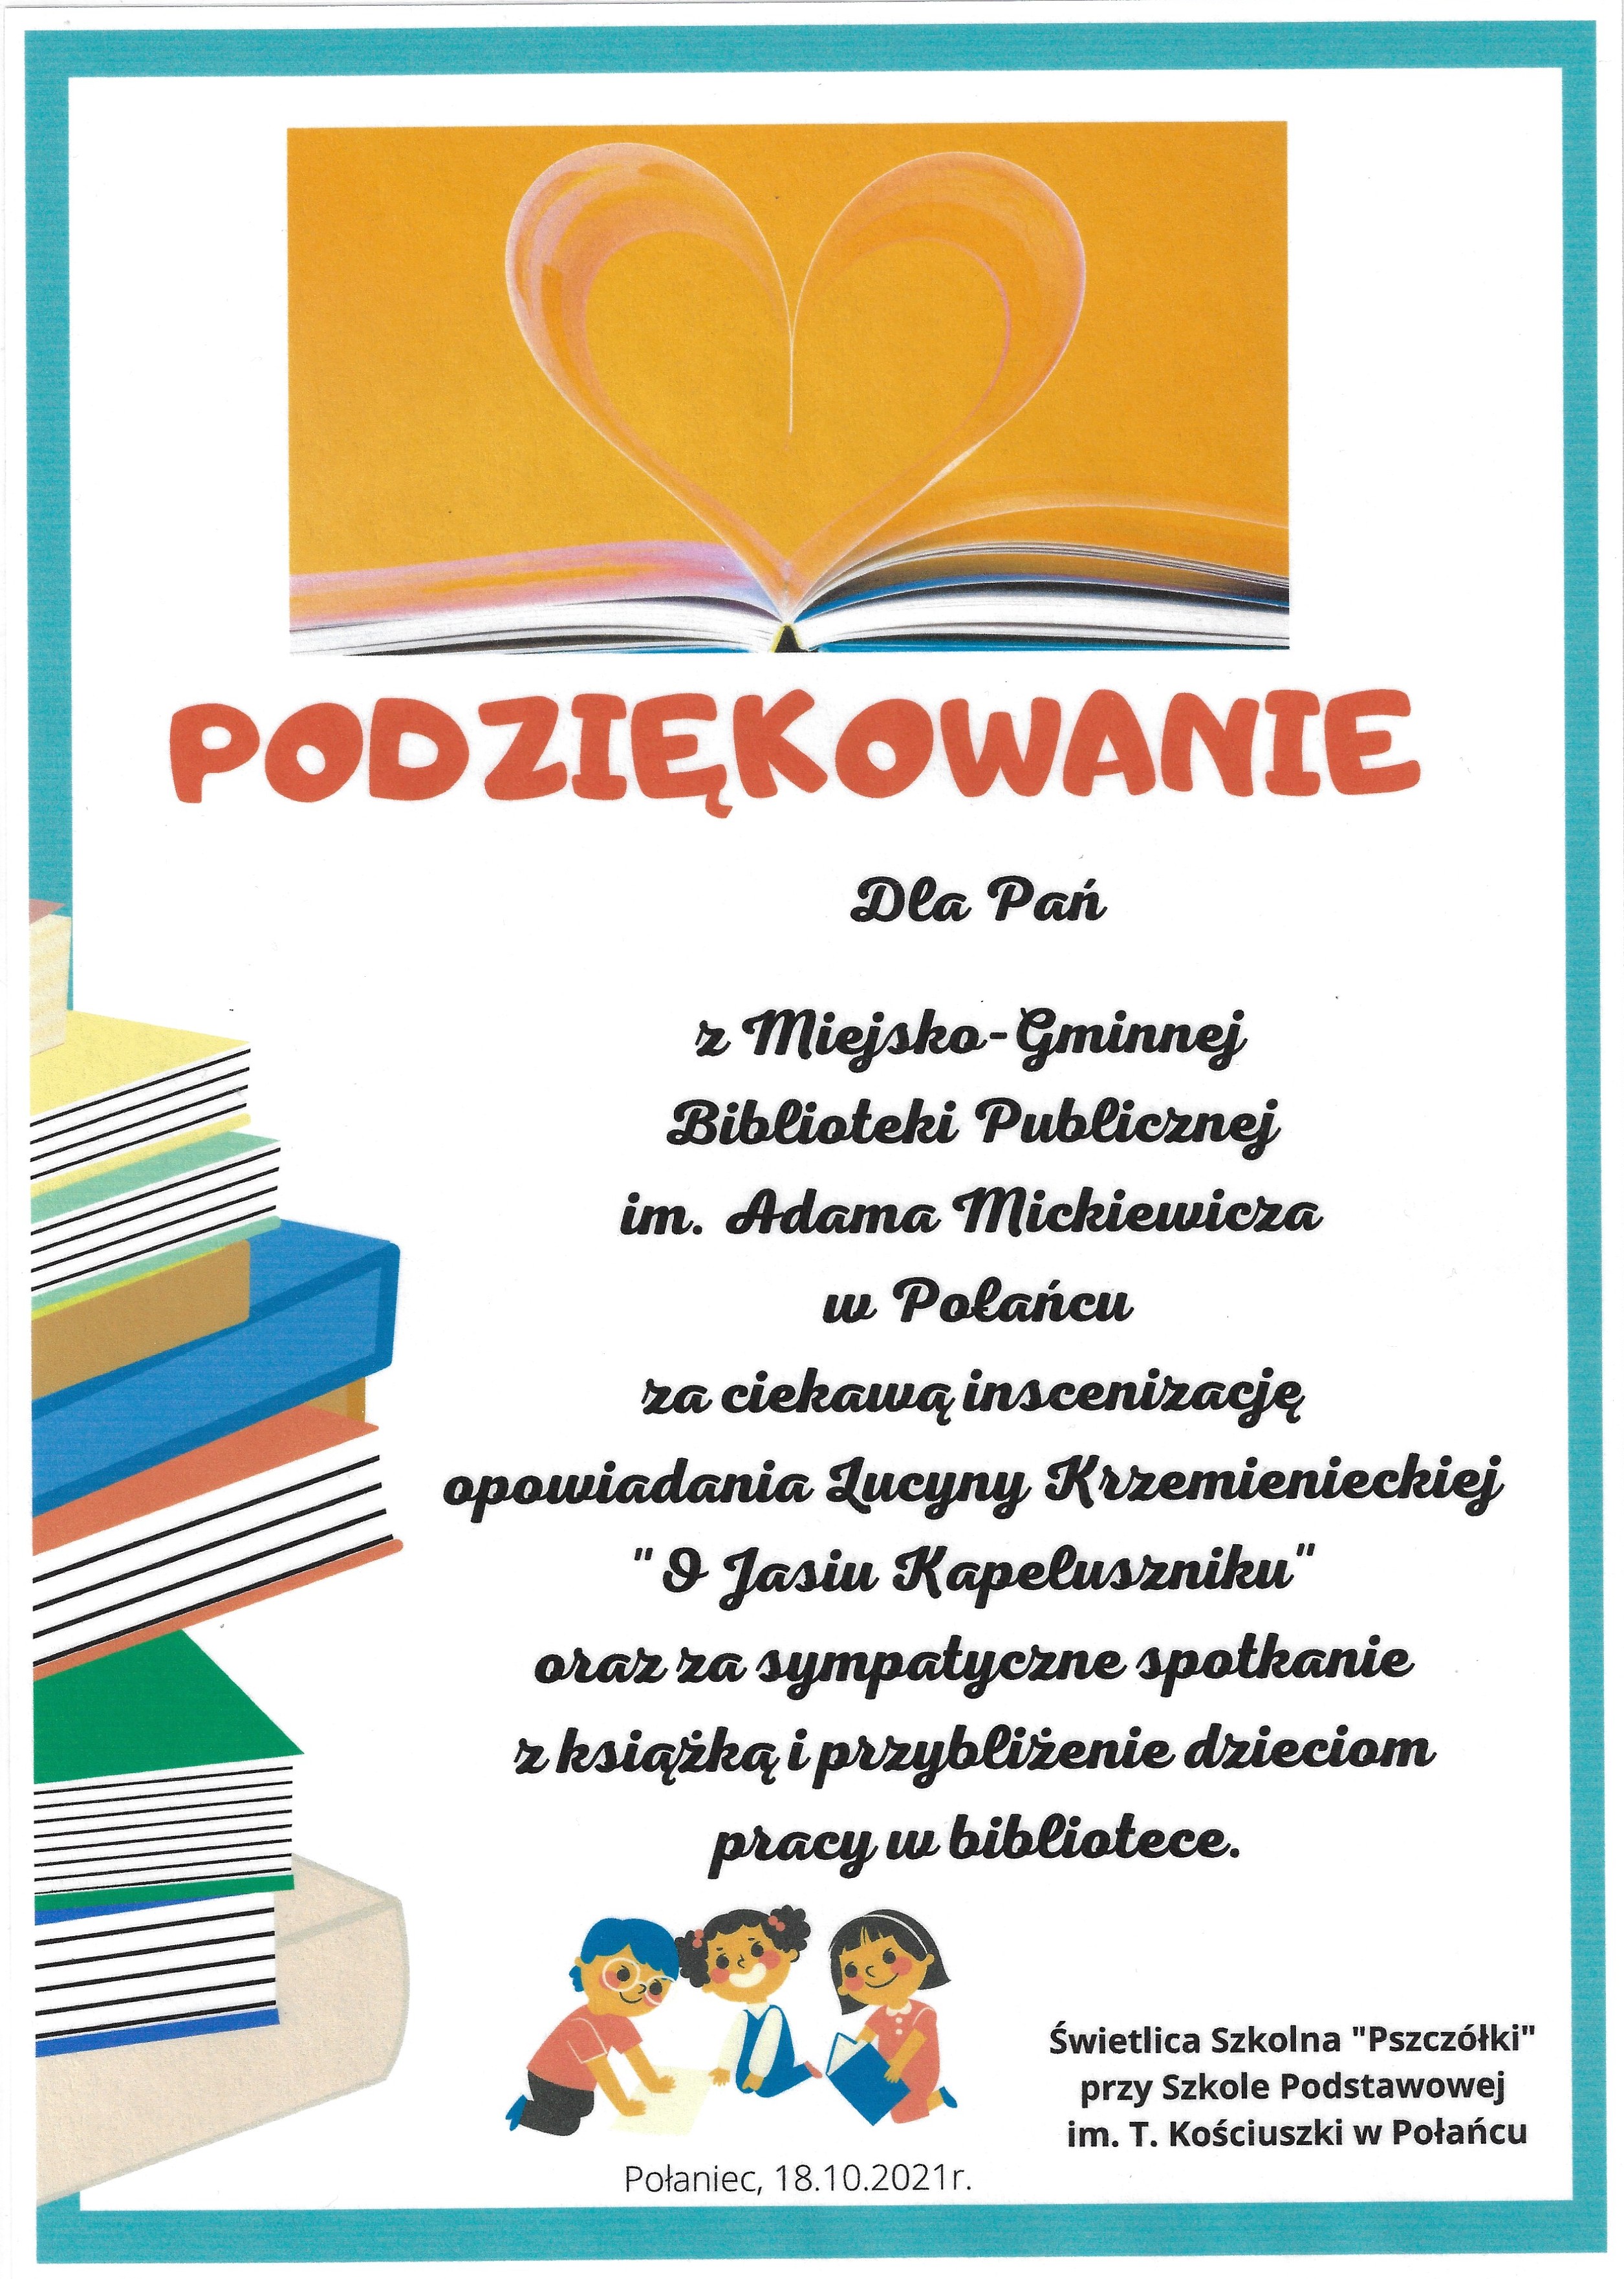 Podziękowanie od dzieci z zerówki ze Szkoły Podstawowej w Połańcu dla Biblioteki za inscenizację opowiadania O jasiu Kapeluszniku i za spotkanie w Bibliotece w październiku 2021 roku